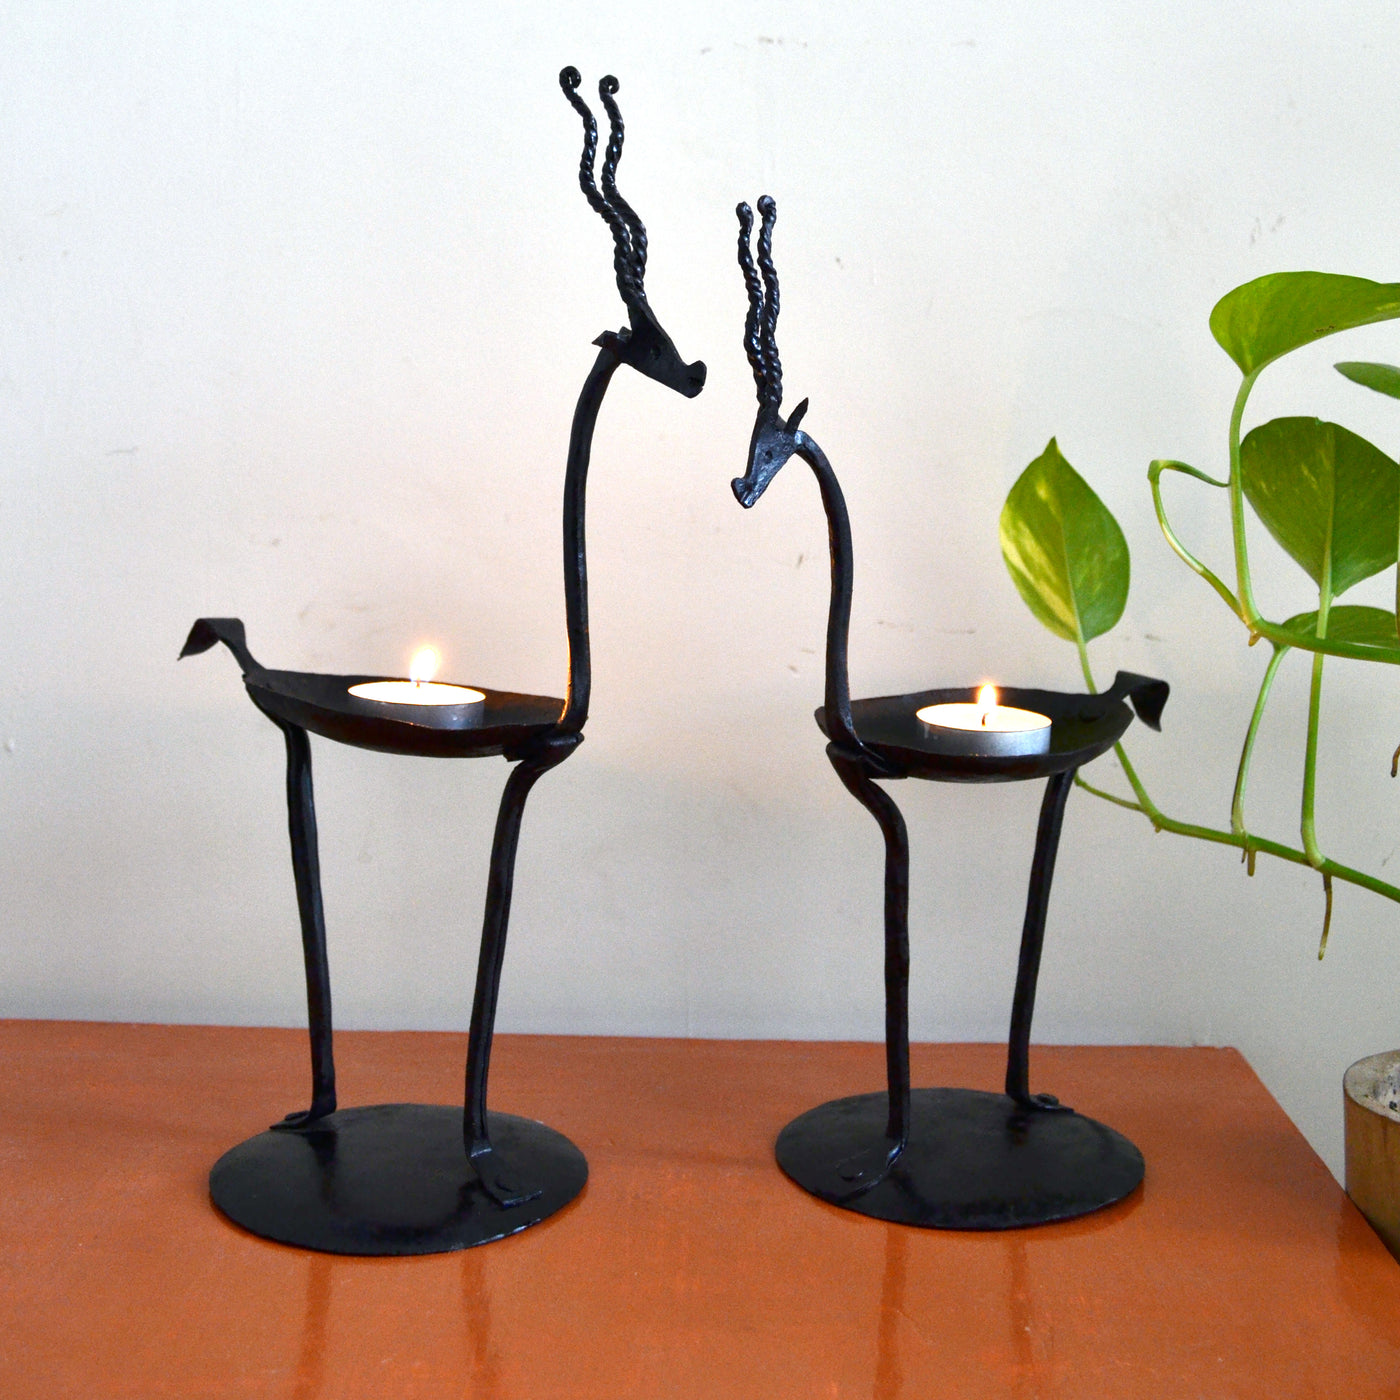 Chinhhari arts Wrought Iron deer pair candle stand - Chinhhari Arts store